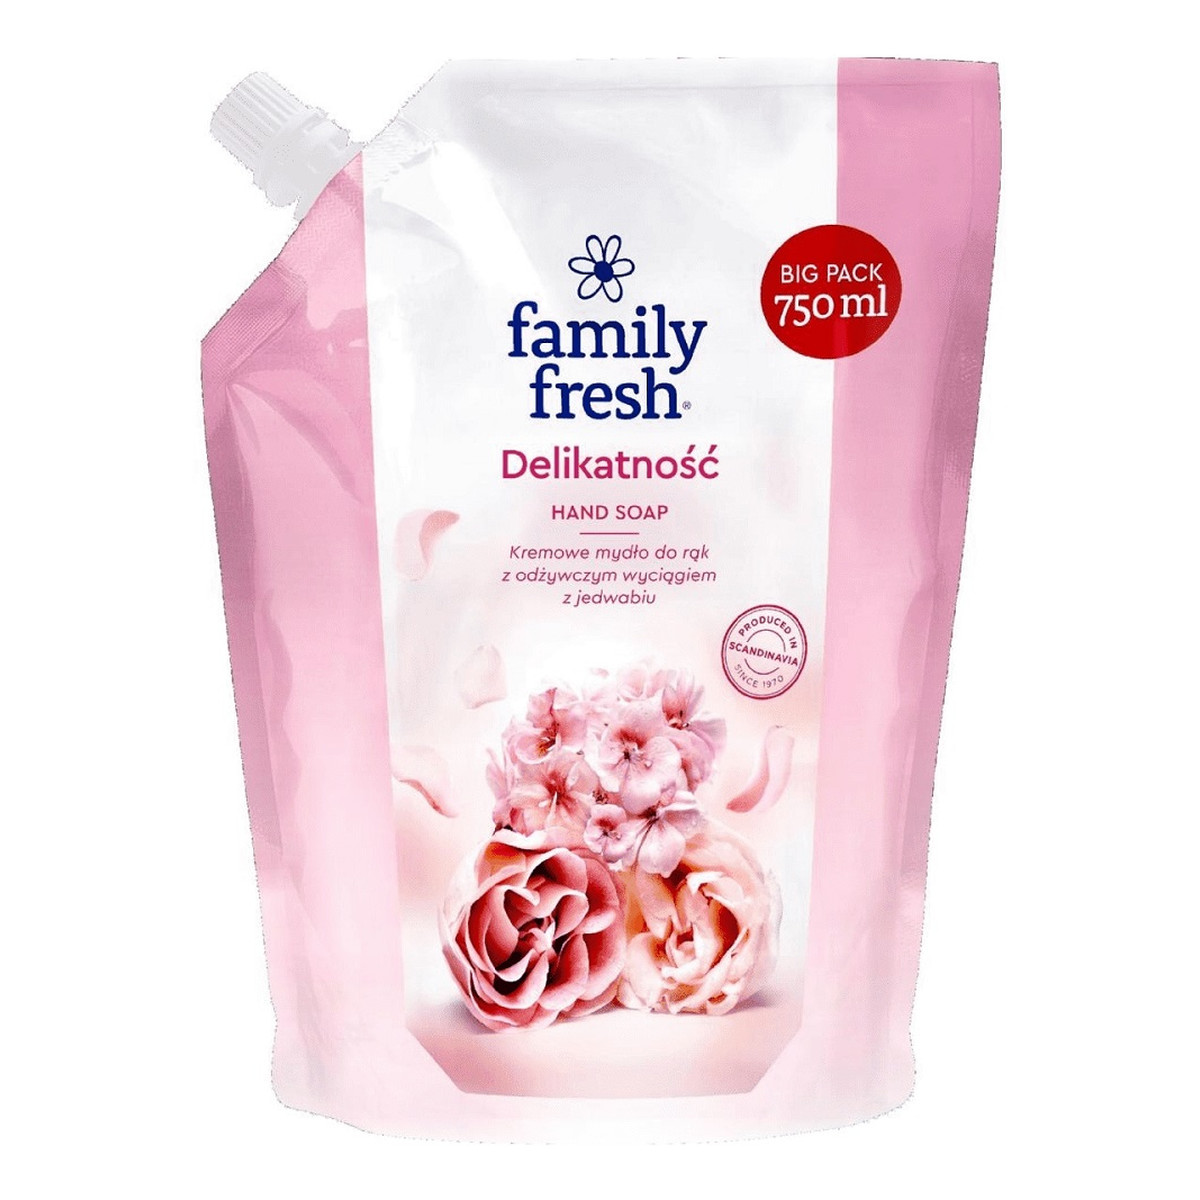 Soraya FAMILY FRESH Hand Soap kremowe mydło do rąk z odżywczym wyciągiem z jedwabiu Delikatność Refill 750ml